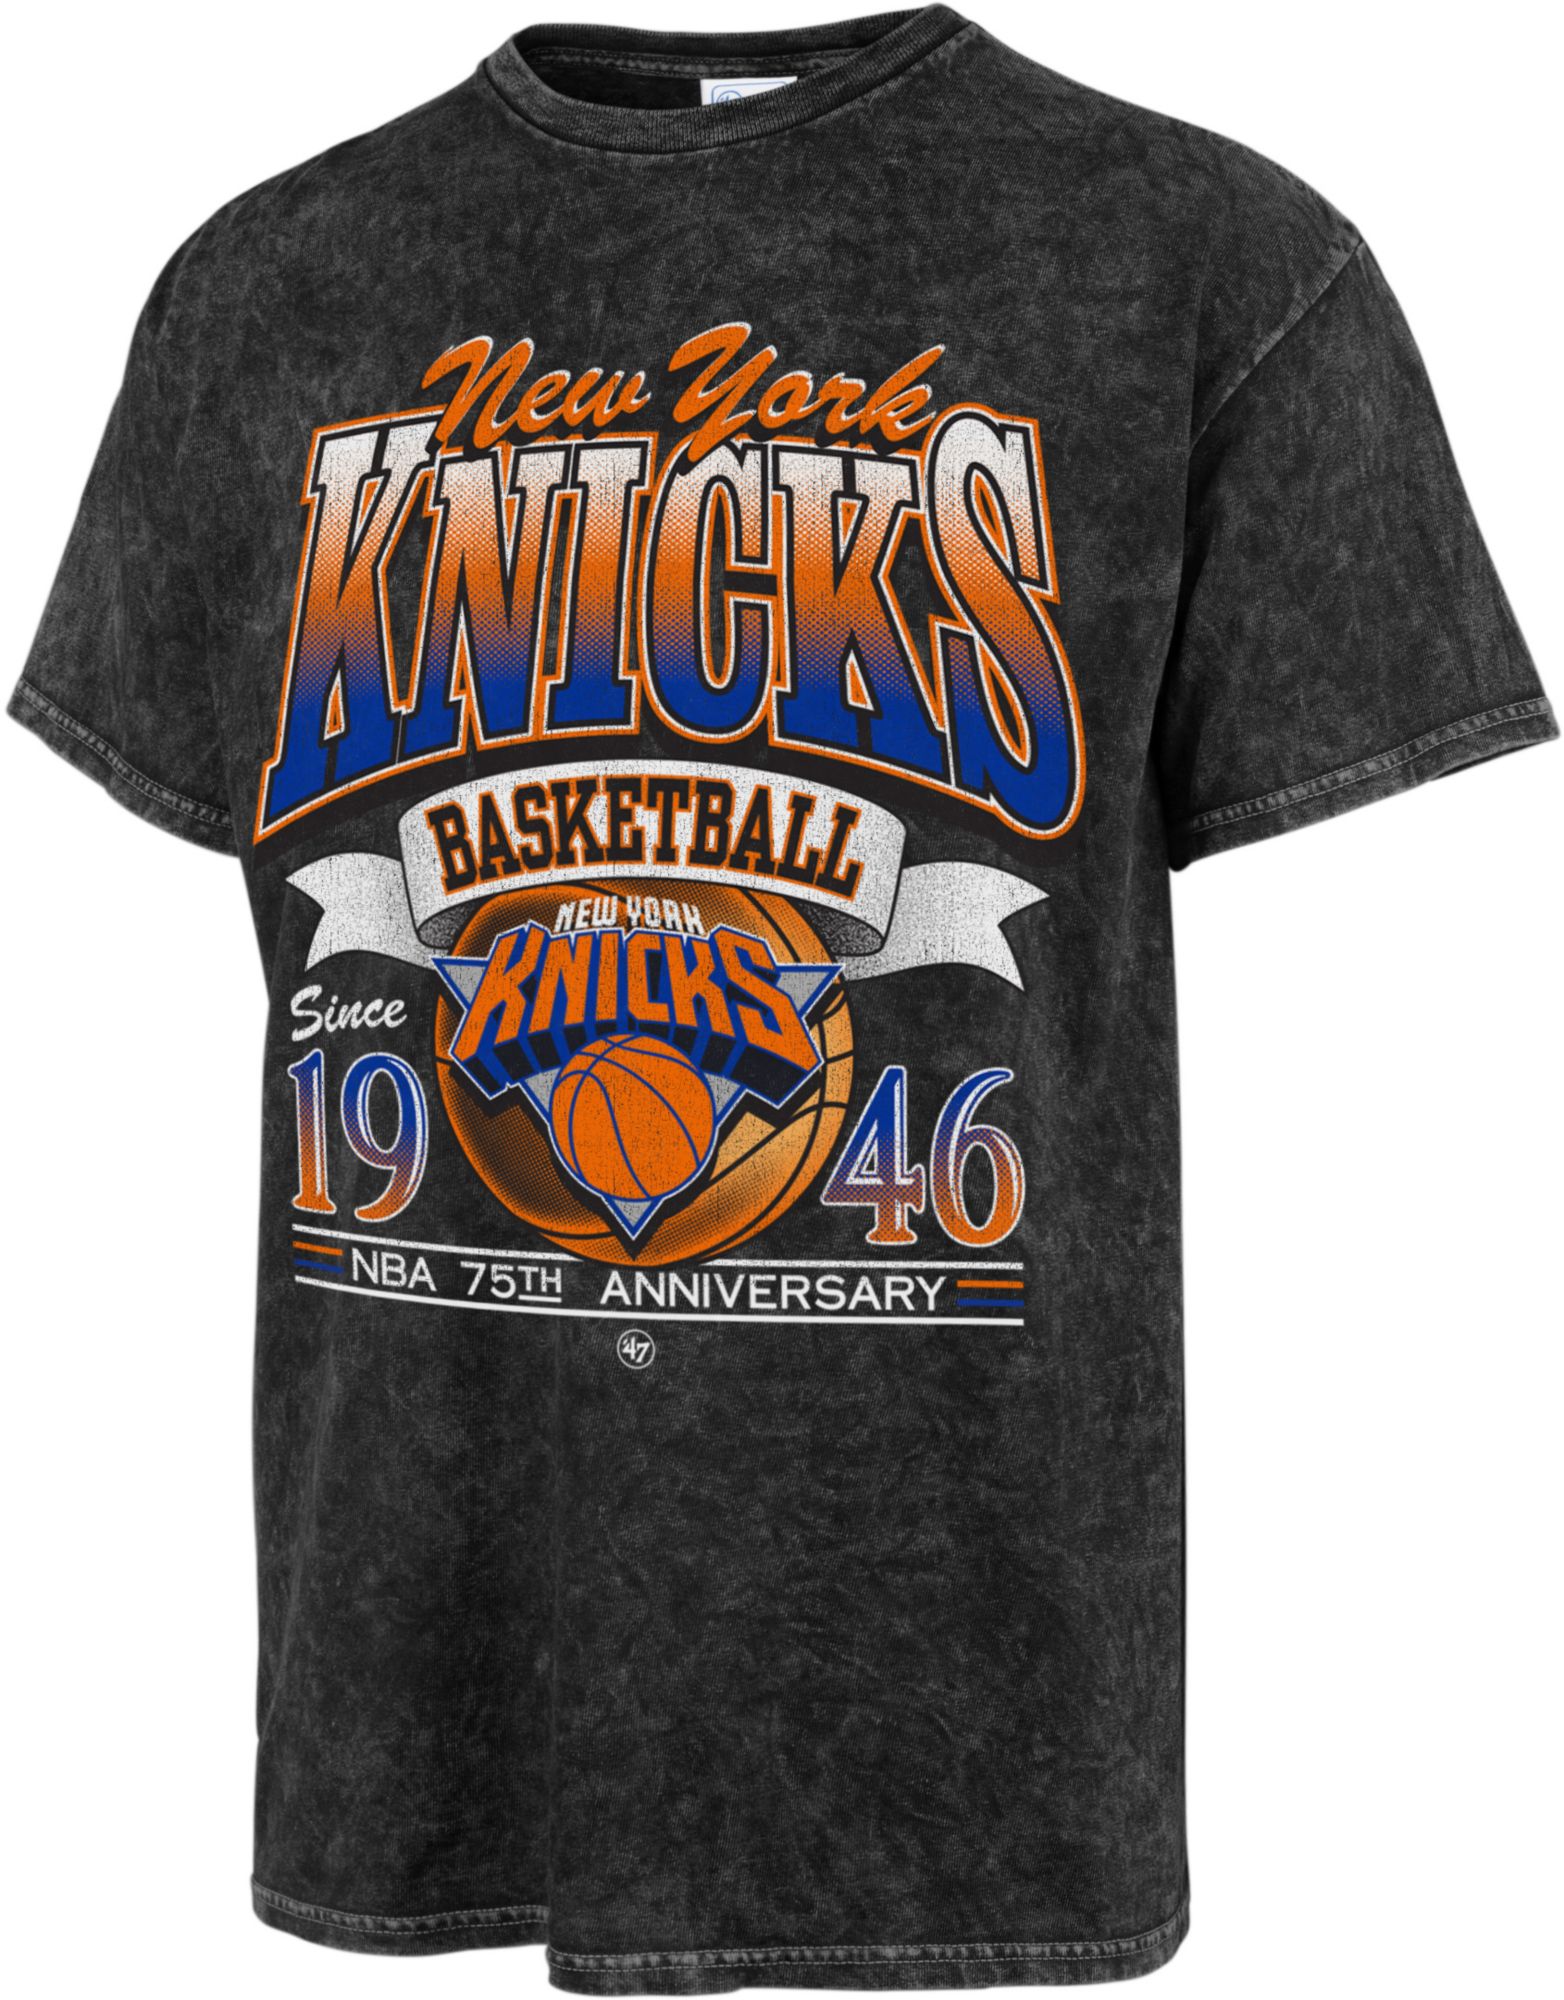 Knicks T Shirt 